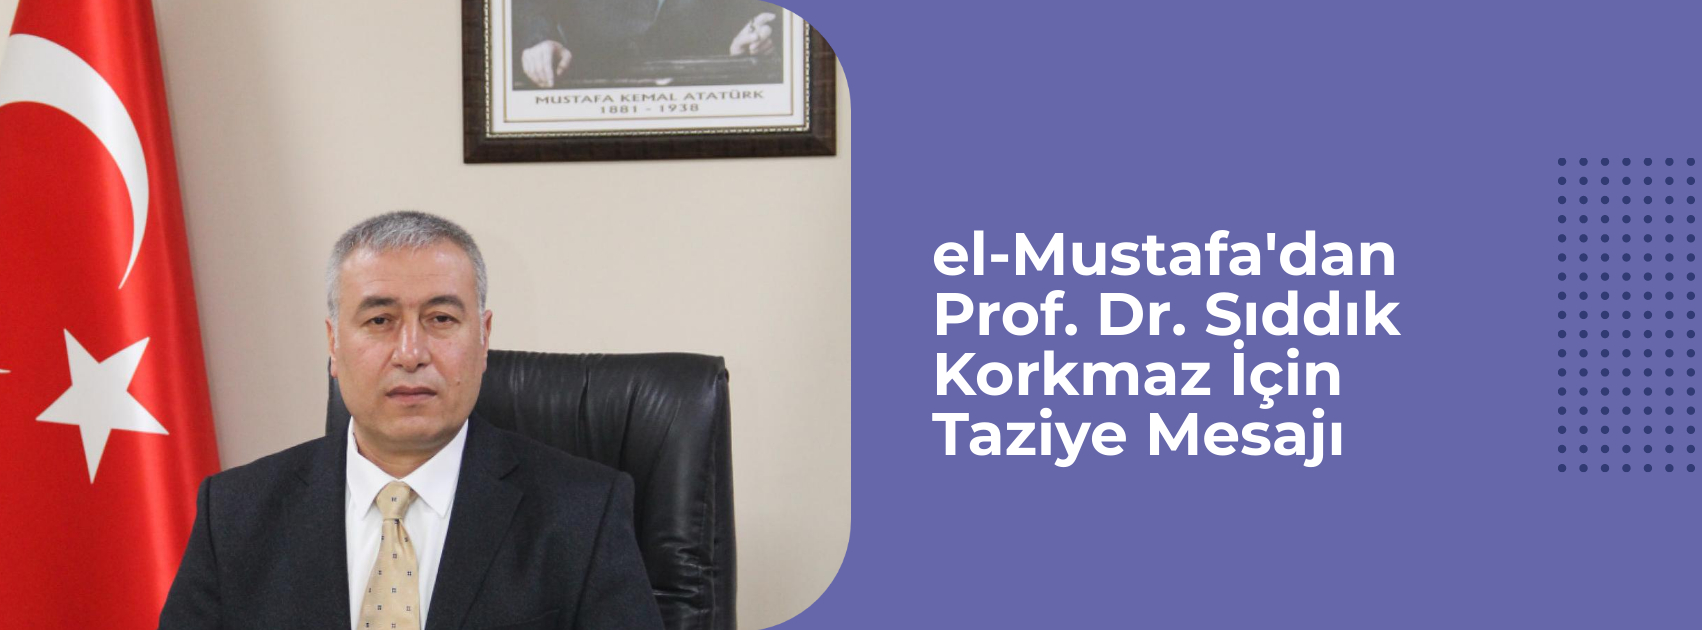 el-Mustafa'dan Prof. Dr. Sıddık Korkmaz İçin Taziye Mesajı